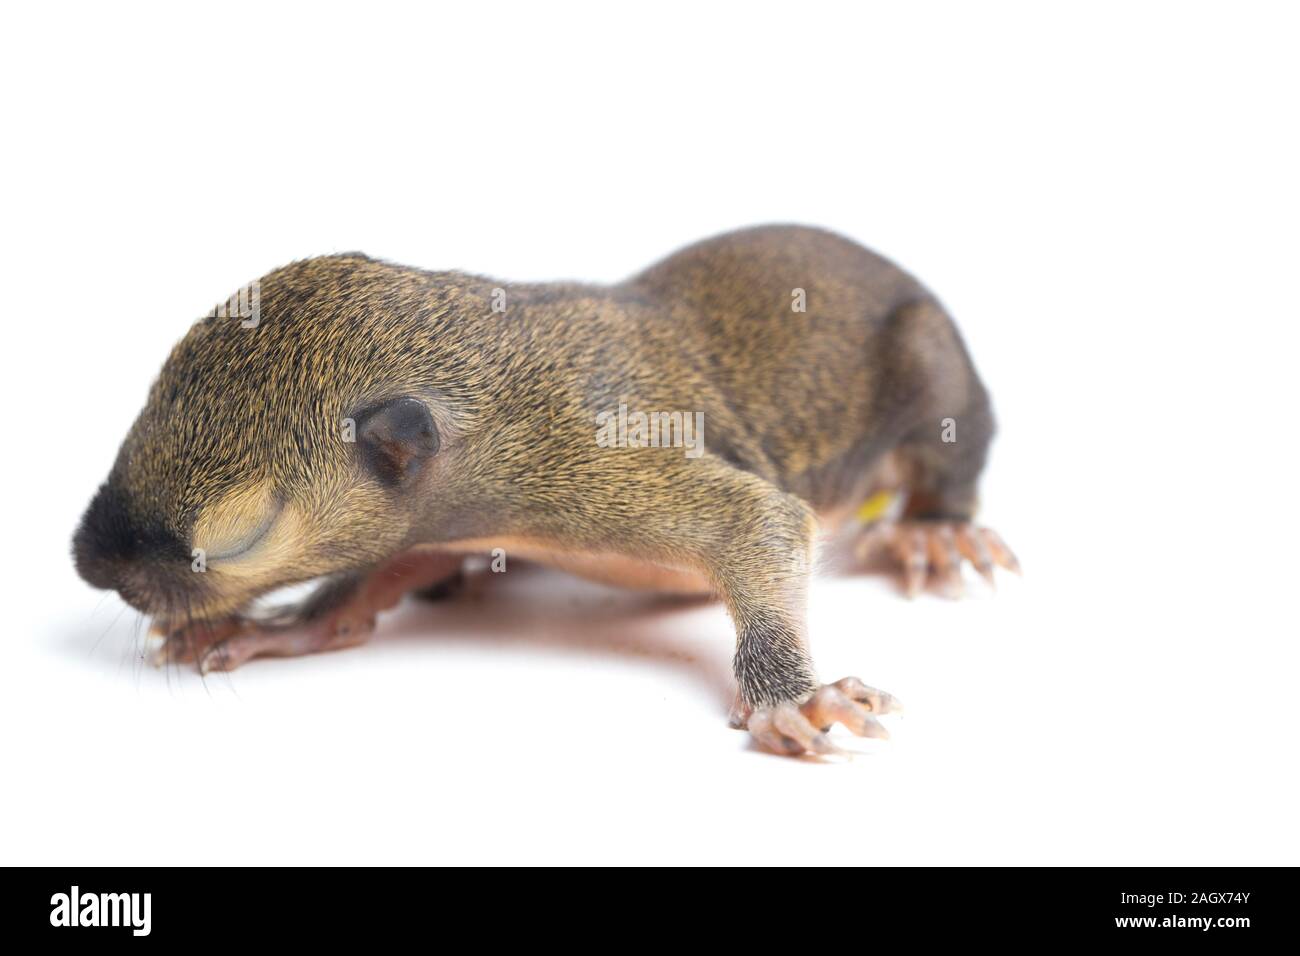 Le bébé écureuil de plantain, oriental ou écureuil écureuil tricolore (Callosciurus notatus) isolé sur fond blanc Banque D'Images